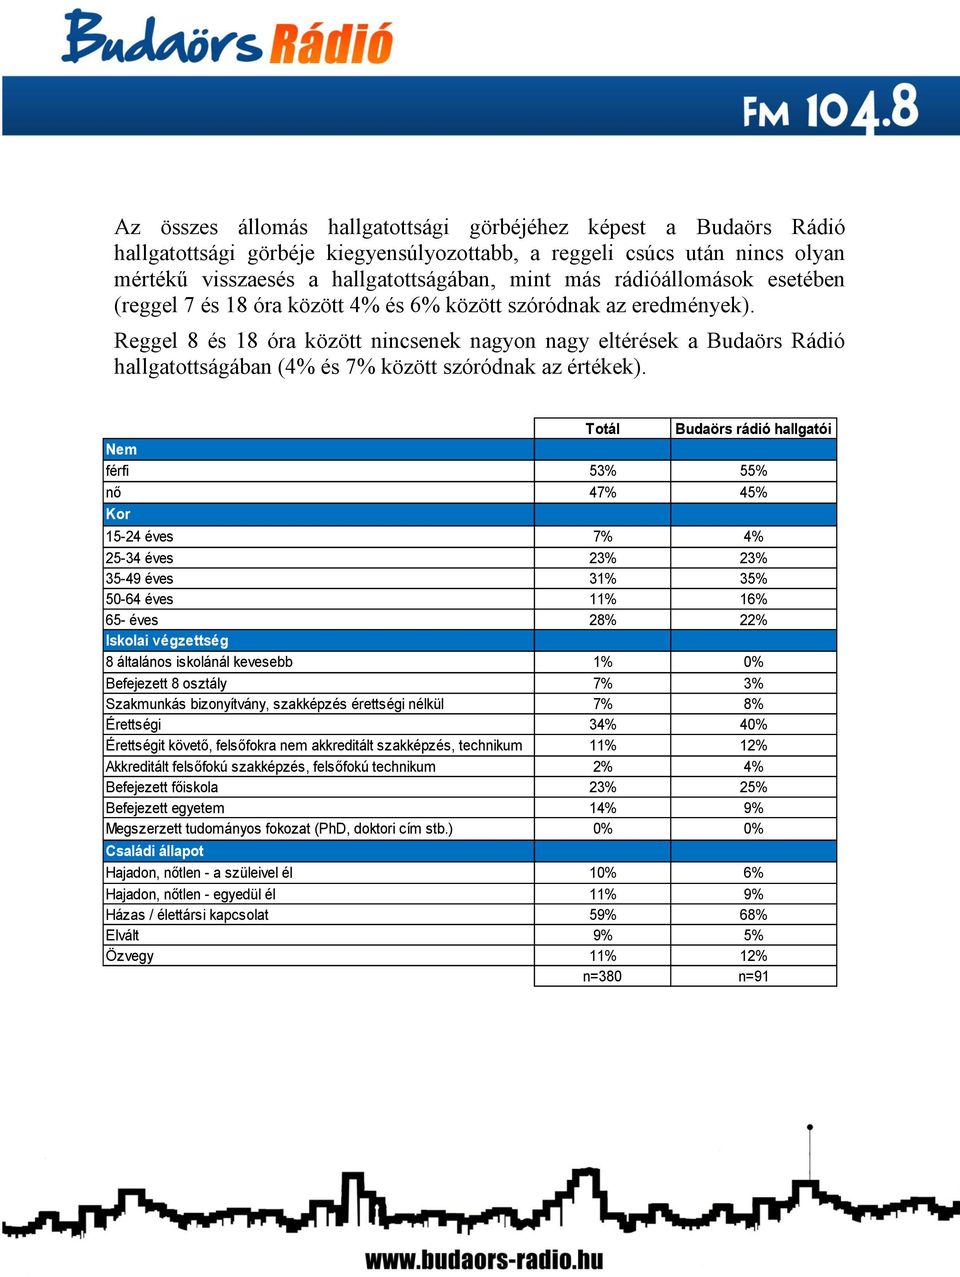 Reggel 8 és 18 óra között nincsenek nagyon nagy eltérések a Budaörs Rádió hallgatottságában (4% és 7% között szóródnak az értékek).